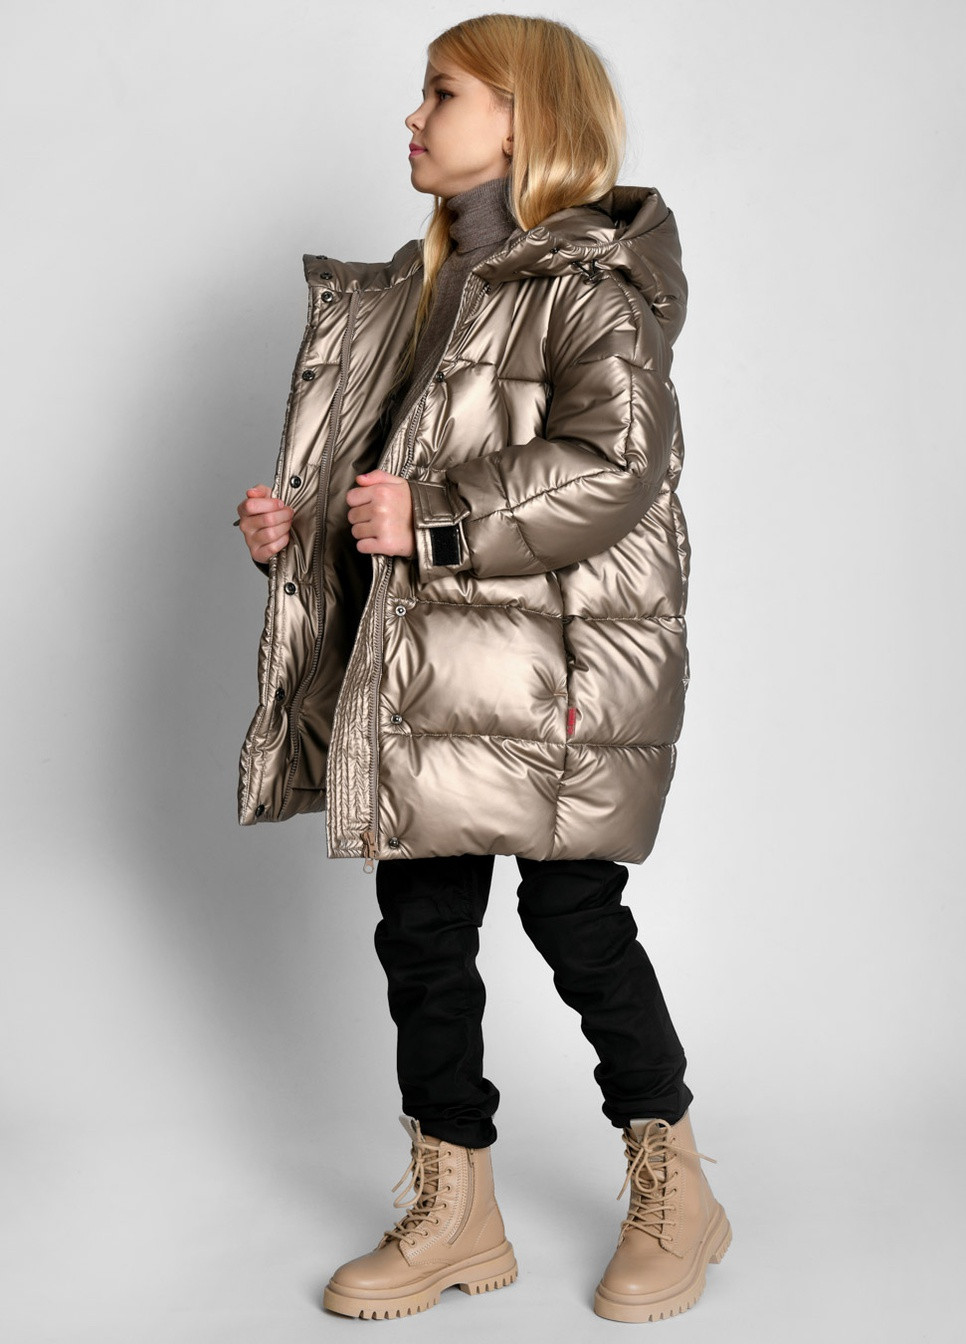 Бронзовая зимняя пуховая куртка для девочек от 6 до 17 лет X-Woyz